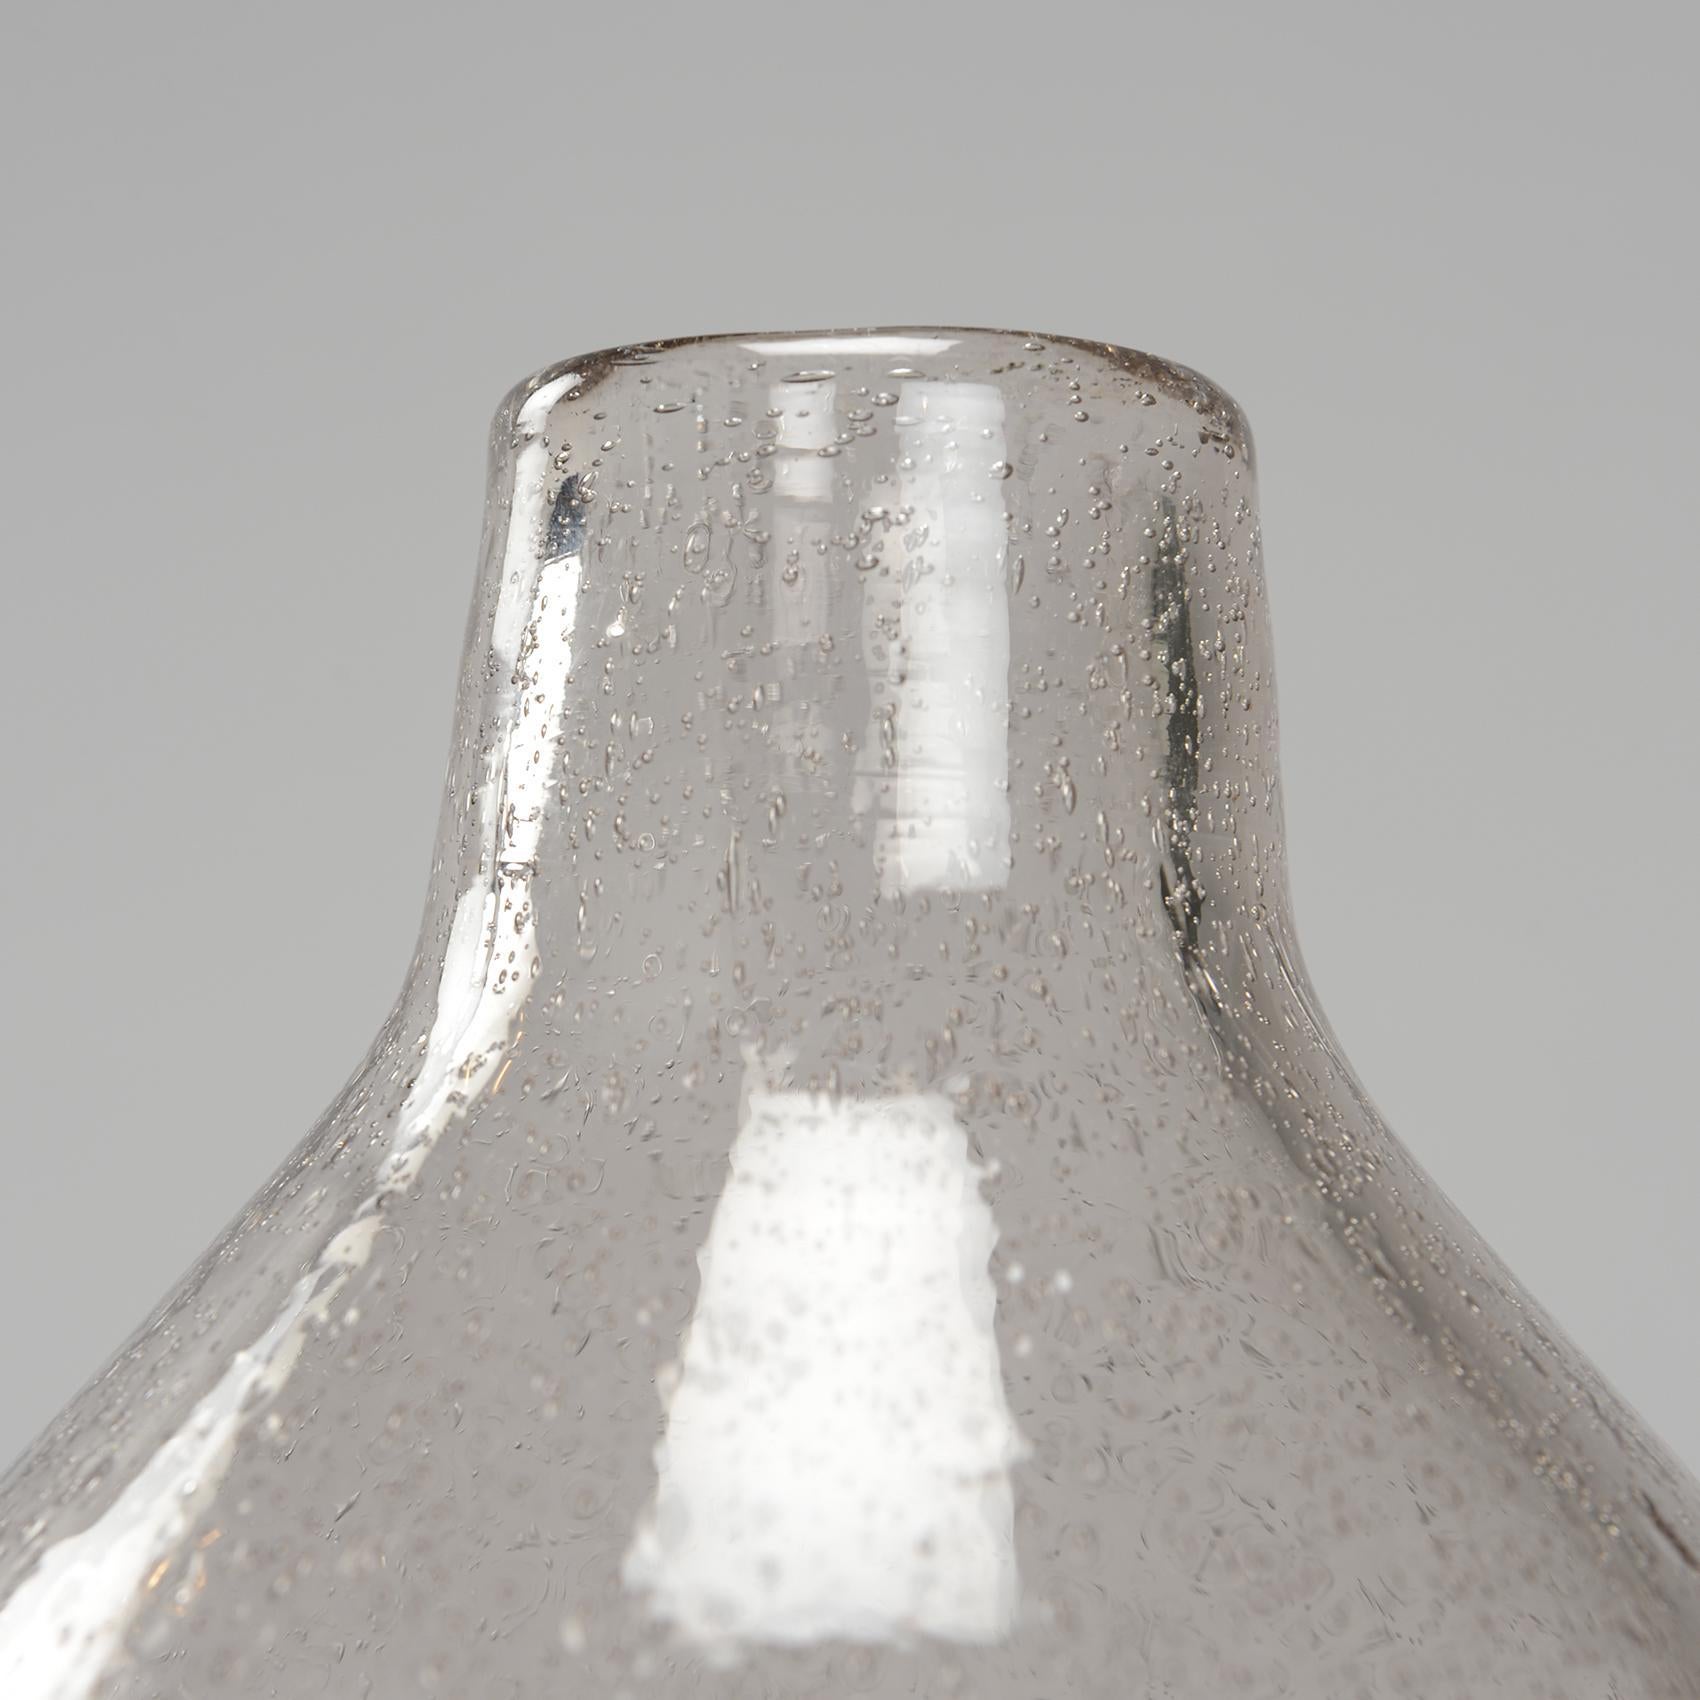 Français Vases en verre soufflé Alexandre Kostanda, Vallauris, France en vente